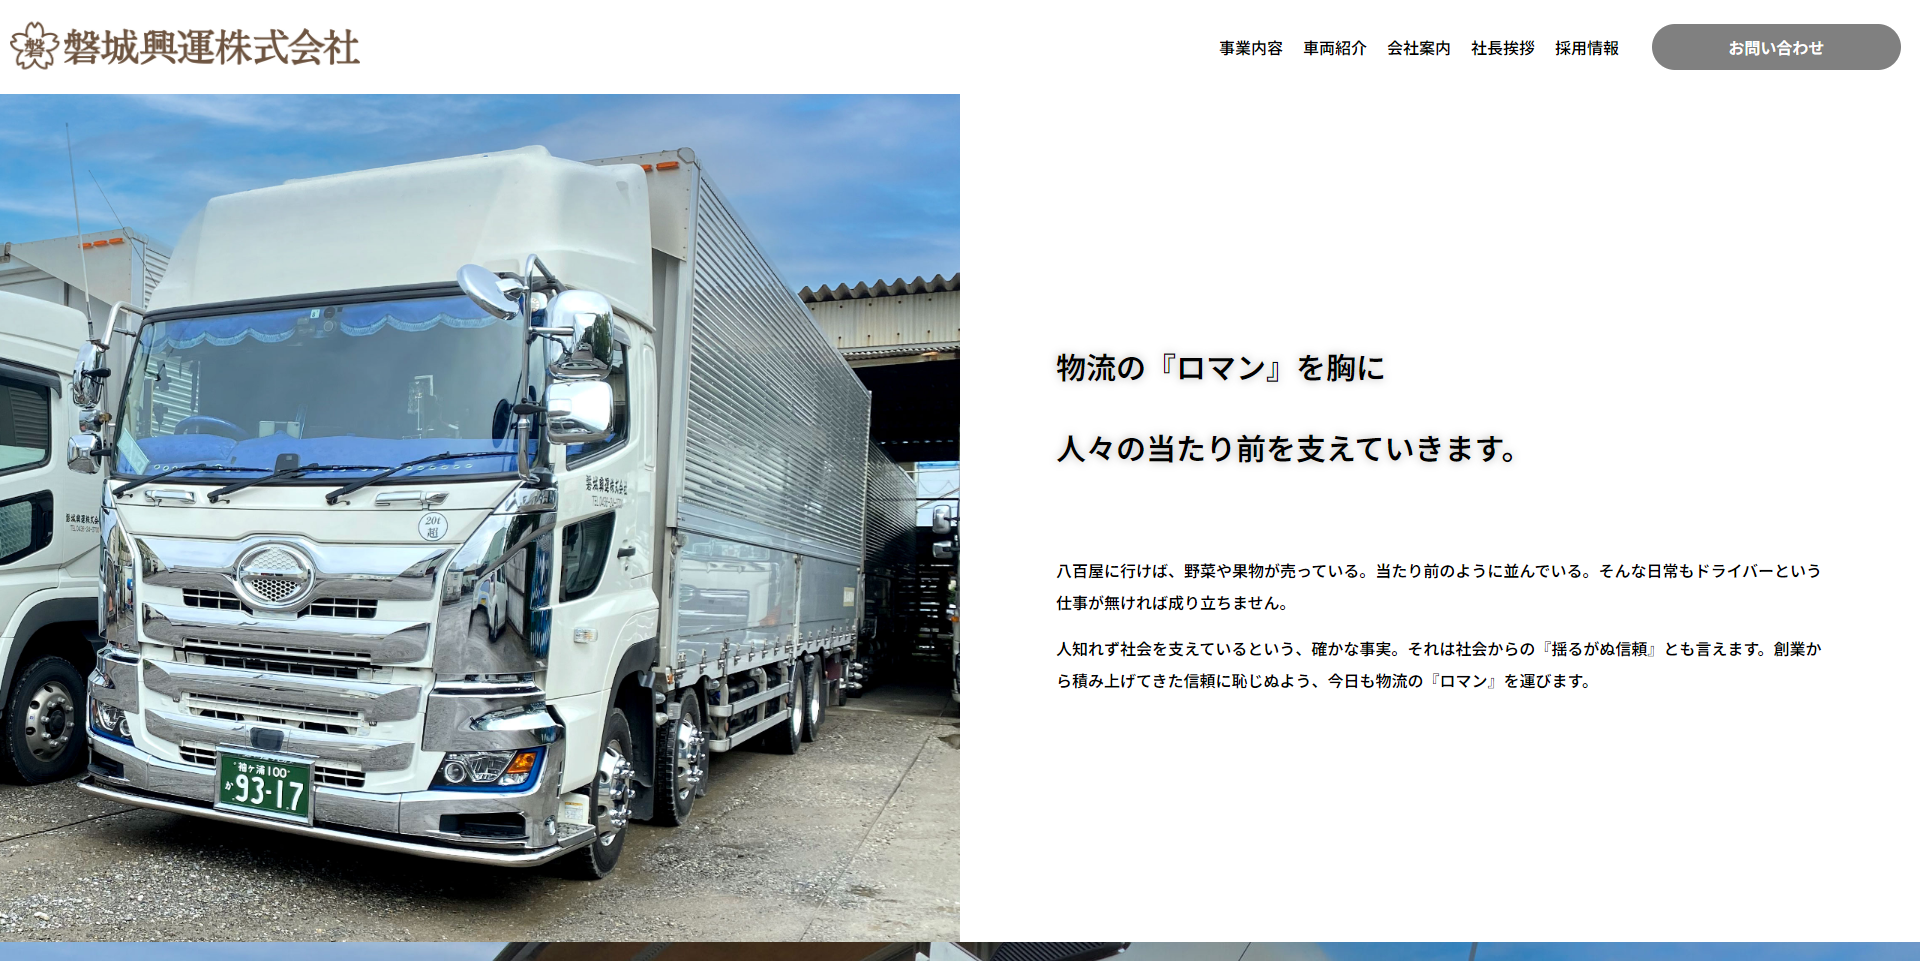 FireShot Capture 024 - 磐城興運株式会社 - 物流の『ロマン』を胸に人々の当たり前を支えていきます。 - iwaki-express.jp